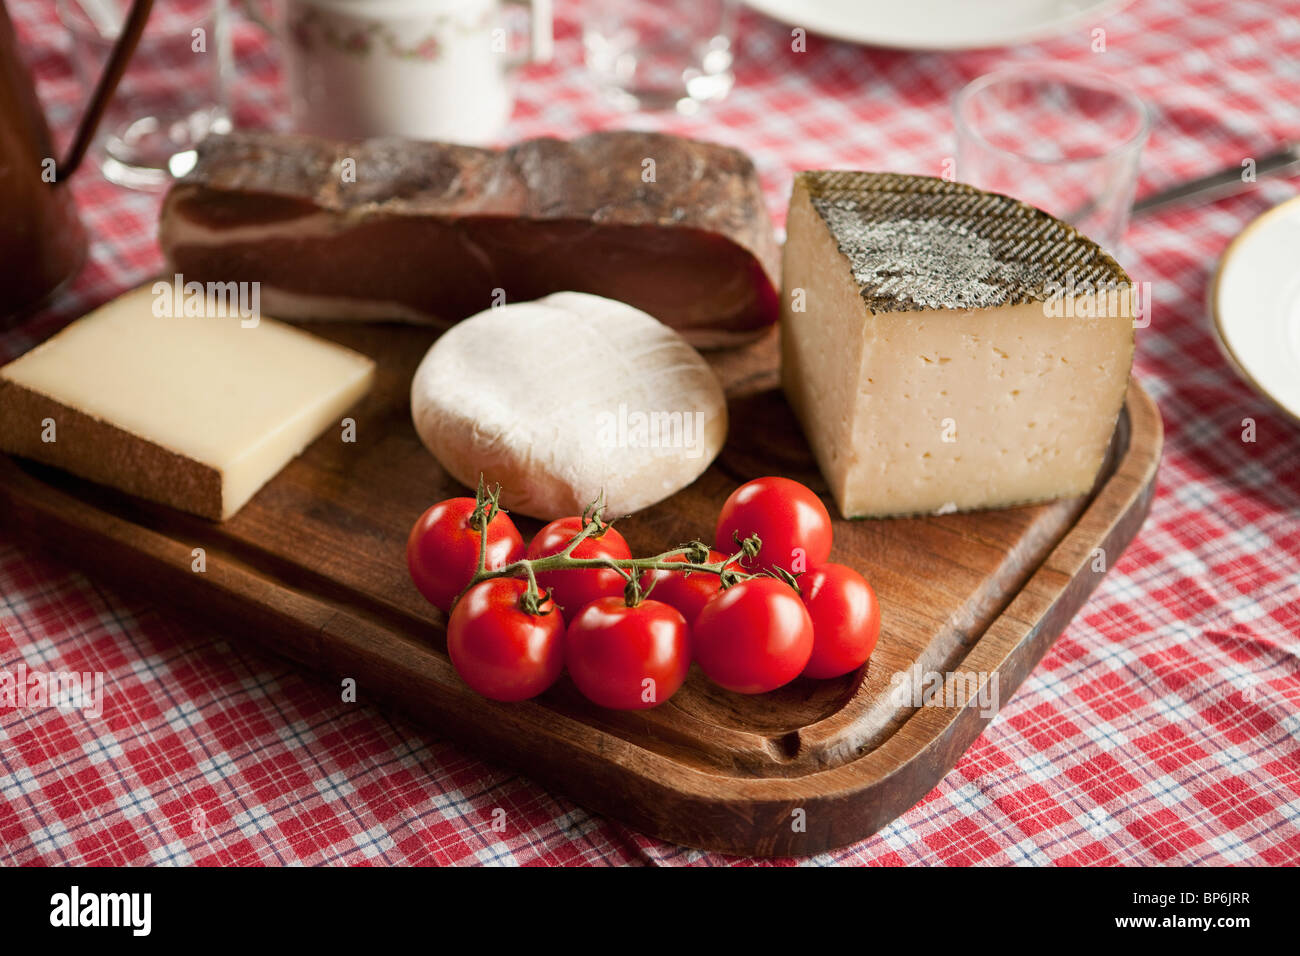 Le fromage, les tomates et le jambon de montagne sur une planche à découper en bois Banque D'Images